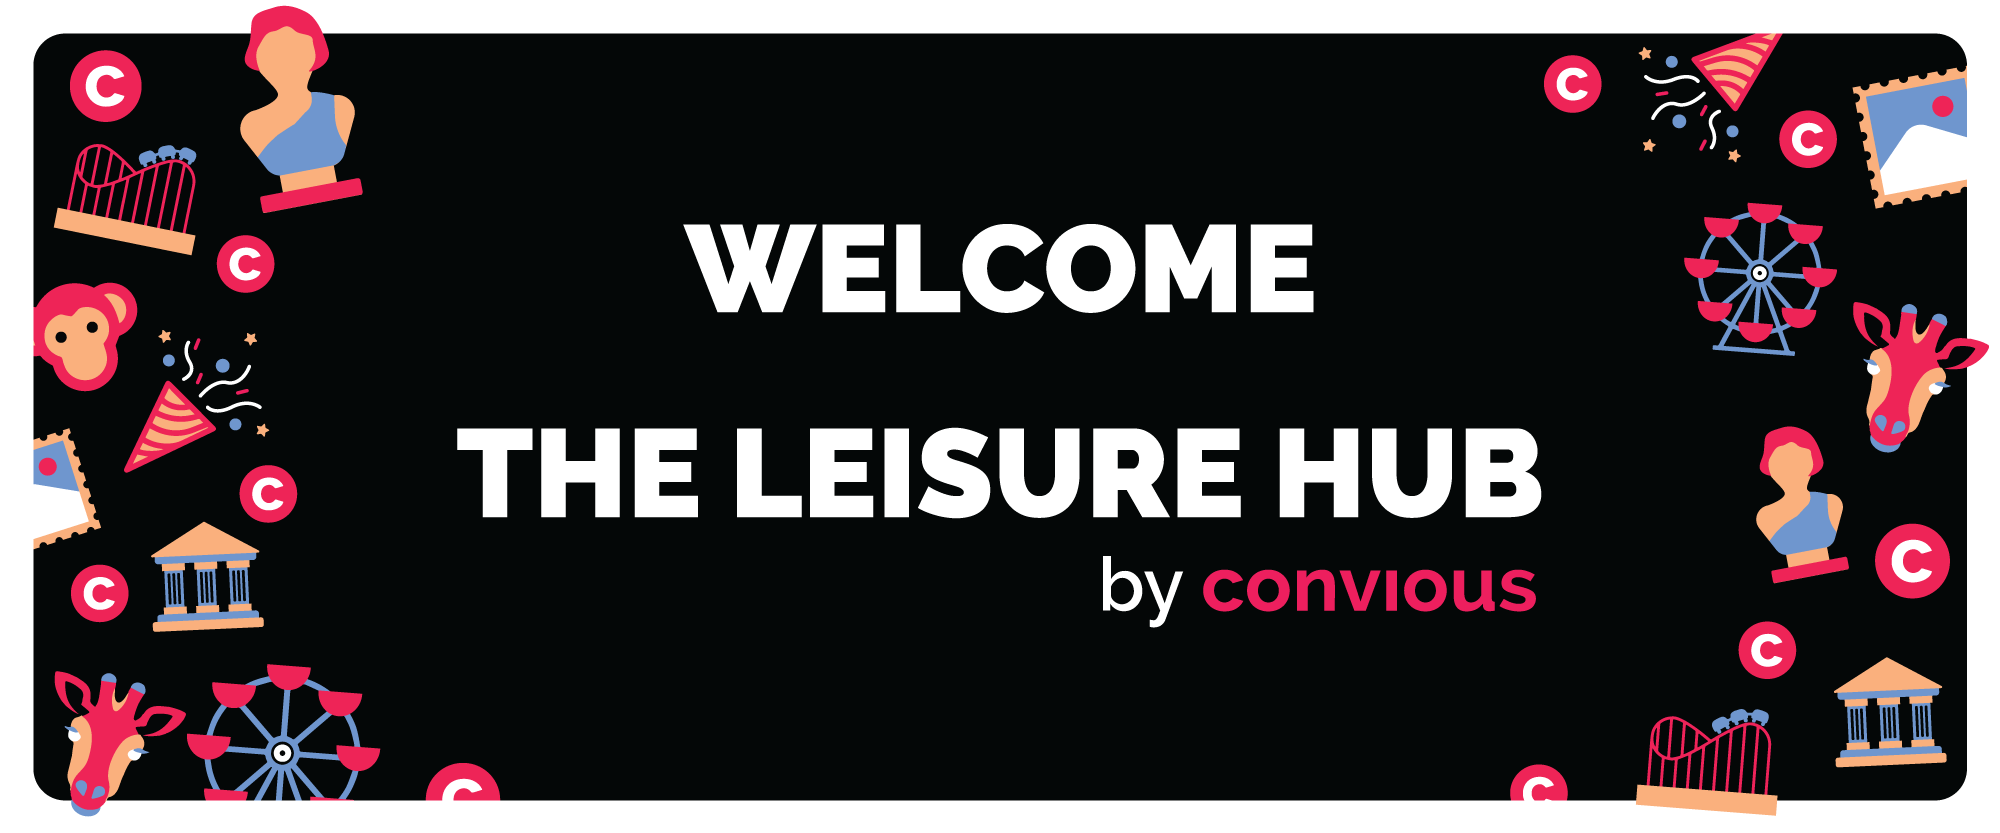 Leisure Hub header - BIG